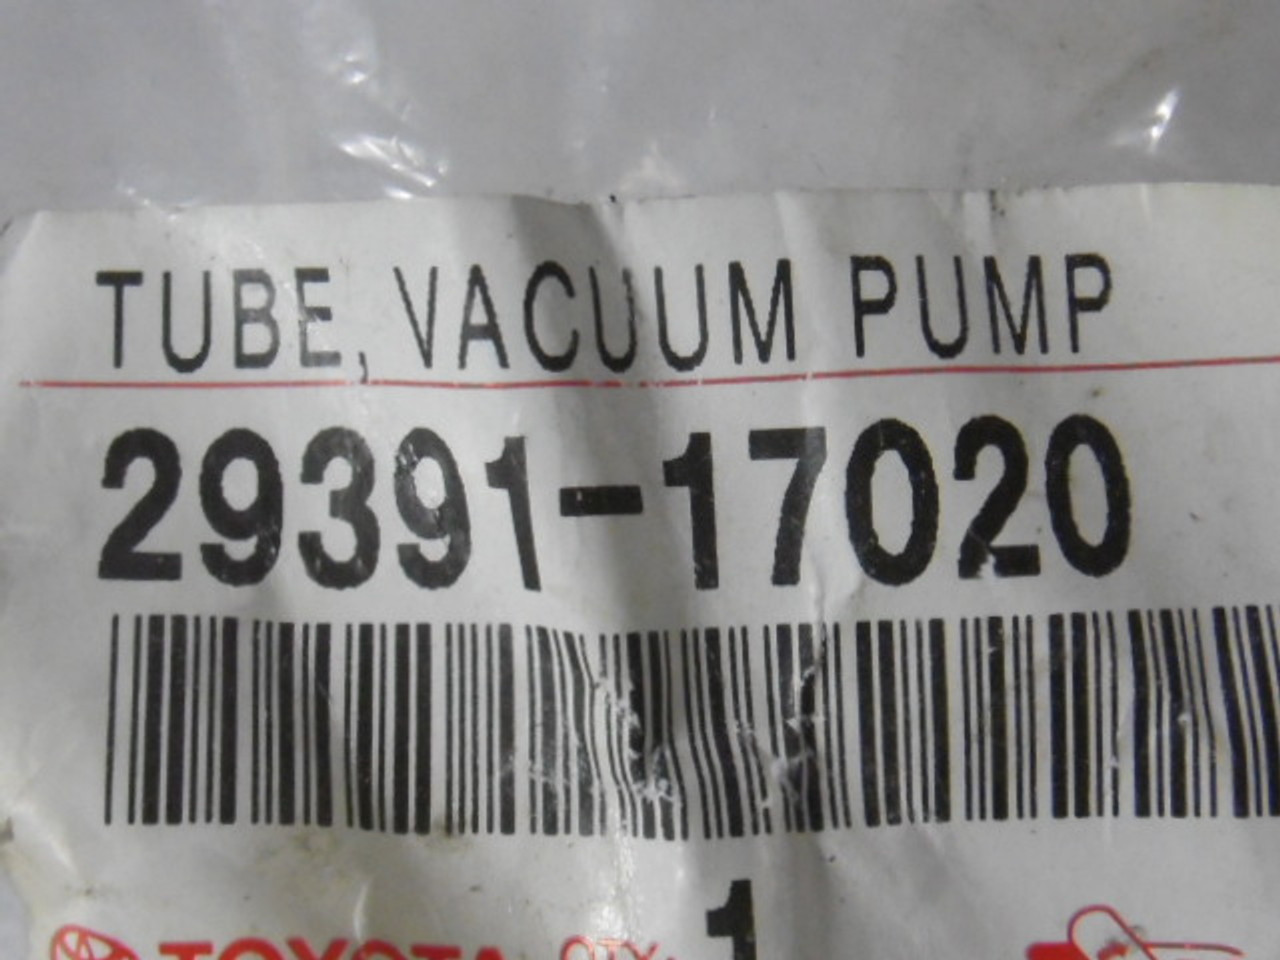 Toyota 29391-17020 Vacuum Pump Tube USED